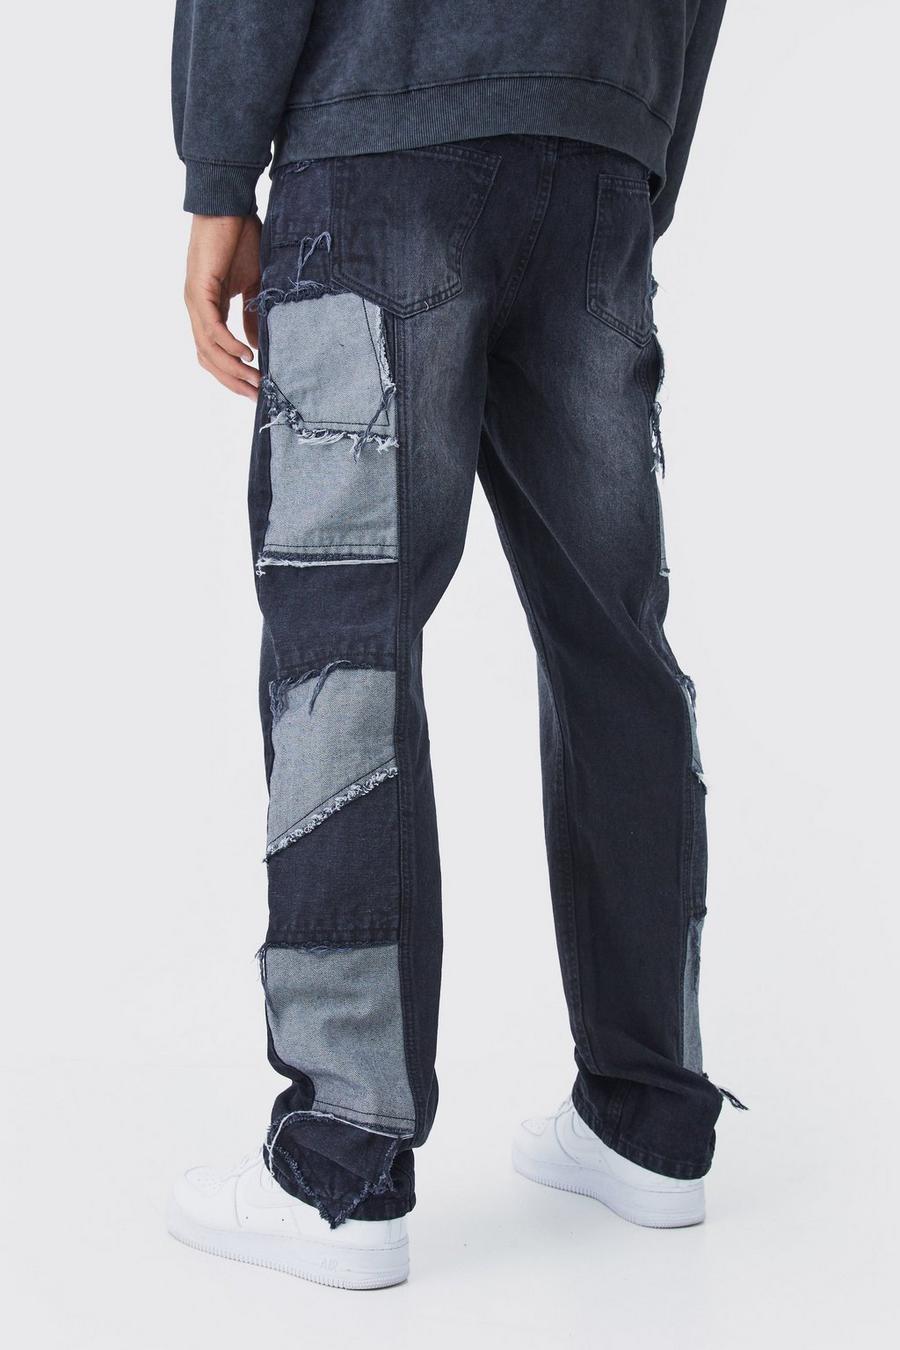 Tall lockere Patchwork Jeans mit Seitenstreifen, Washed black